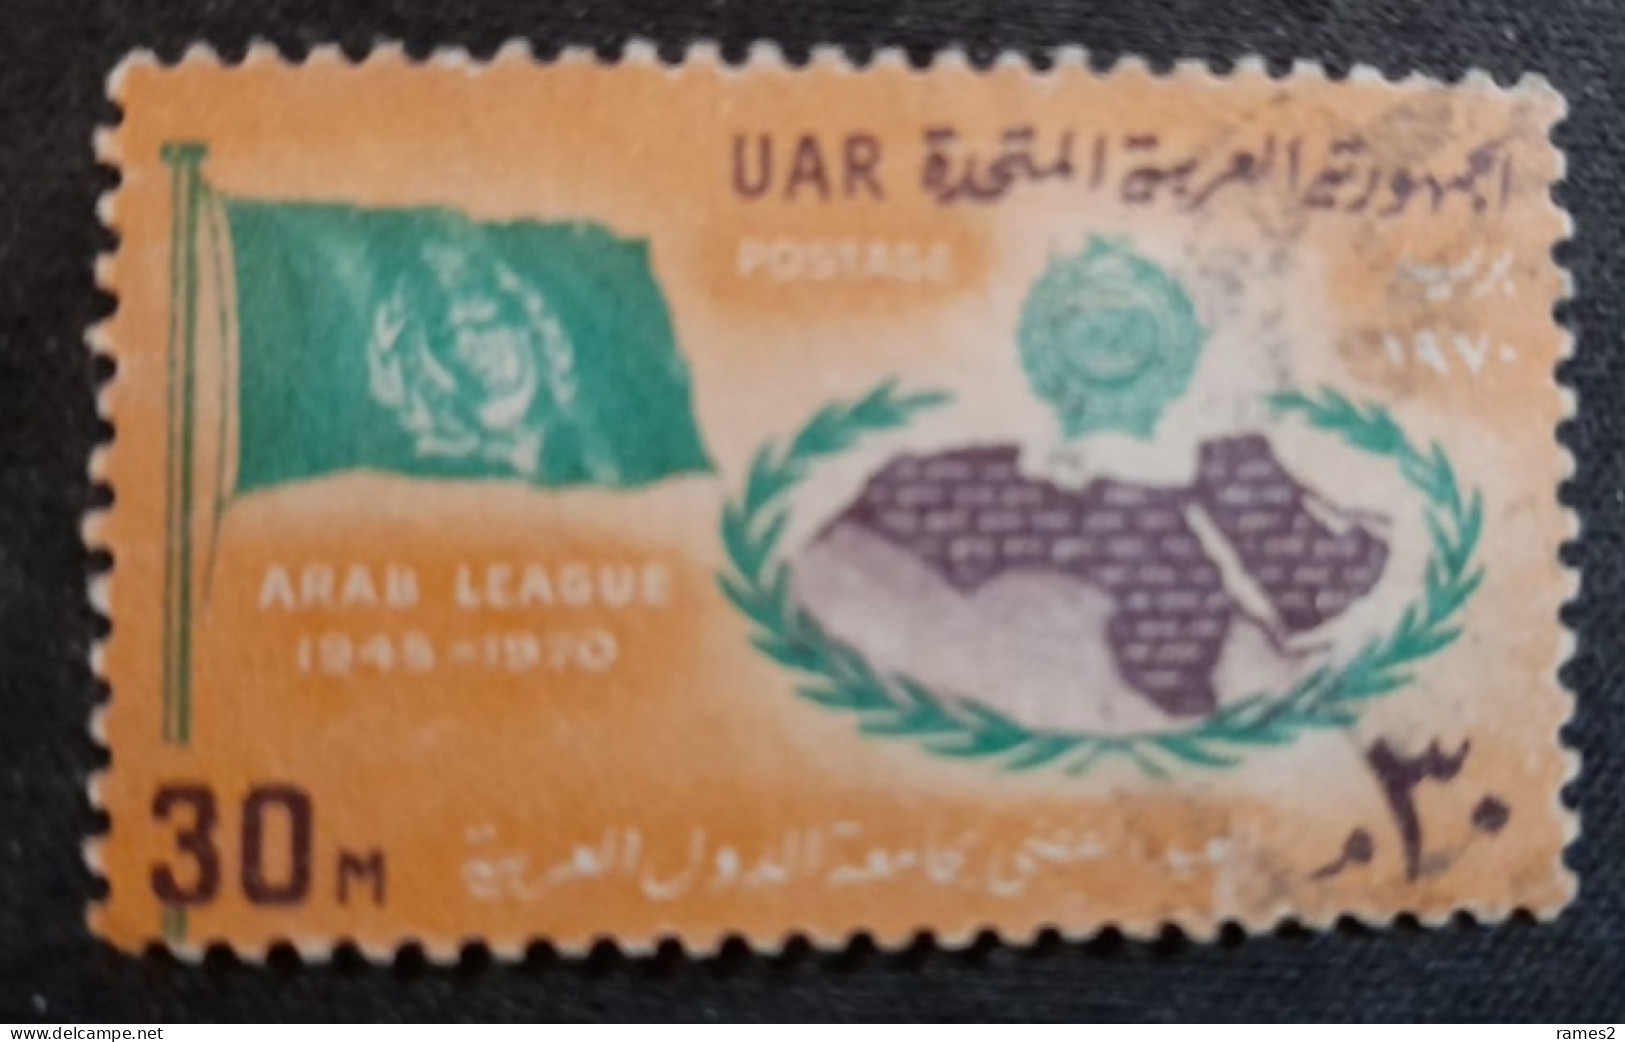 Egypte > 1953-... République > 1970-79 > Oblitérés N° 818 - Used Stamps